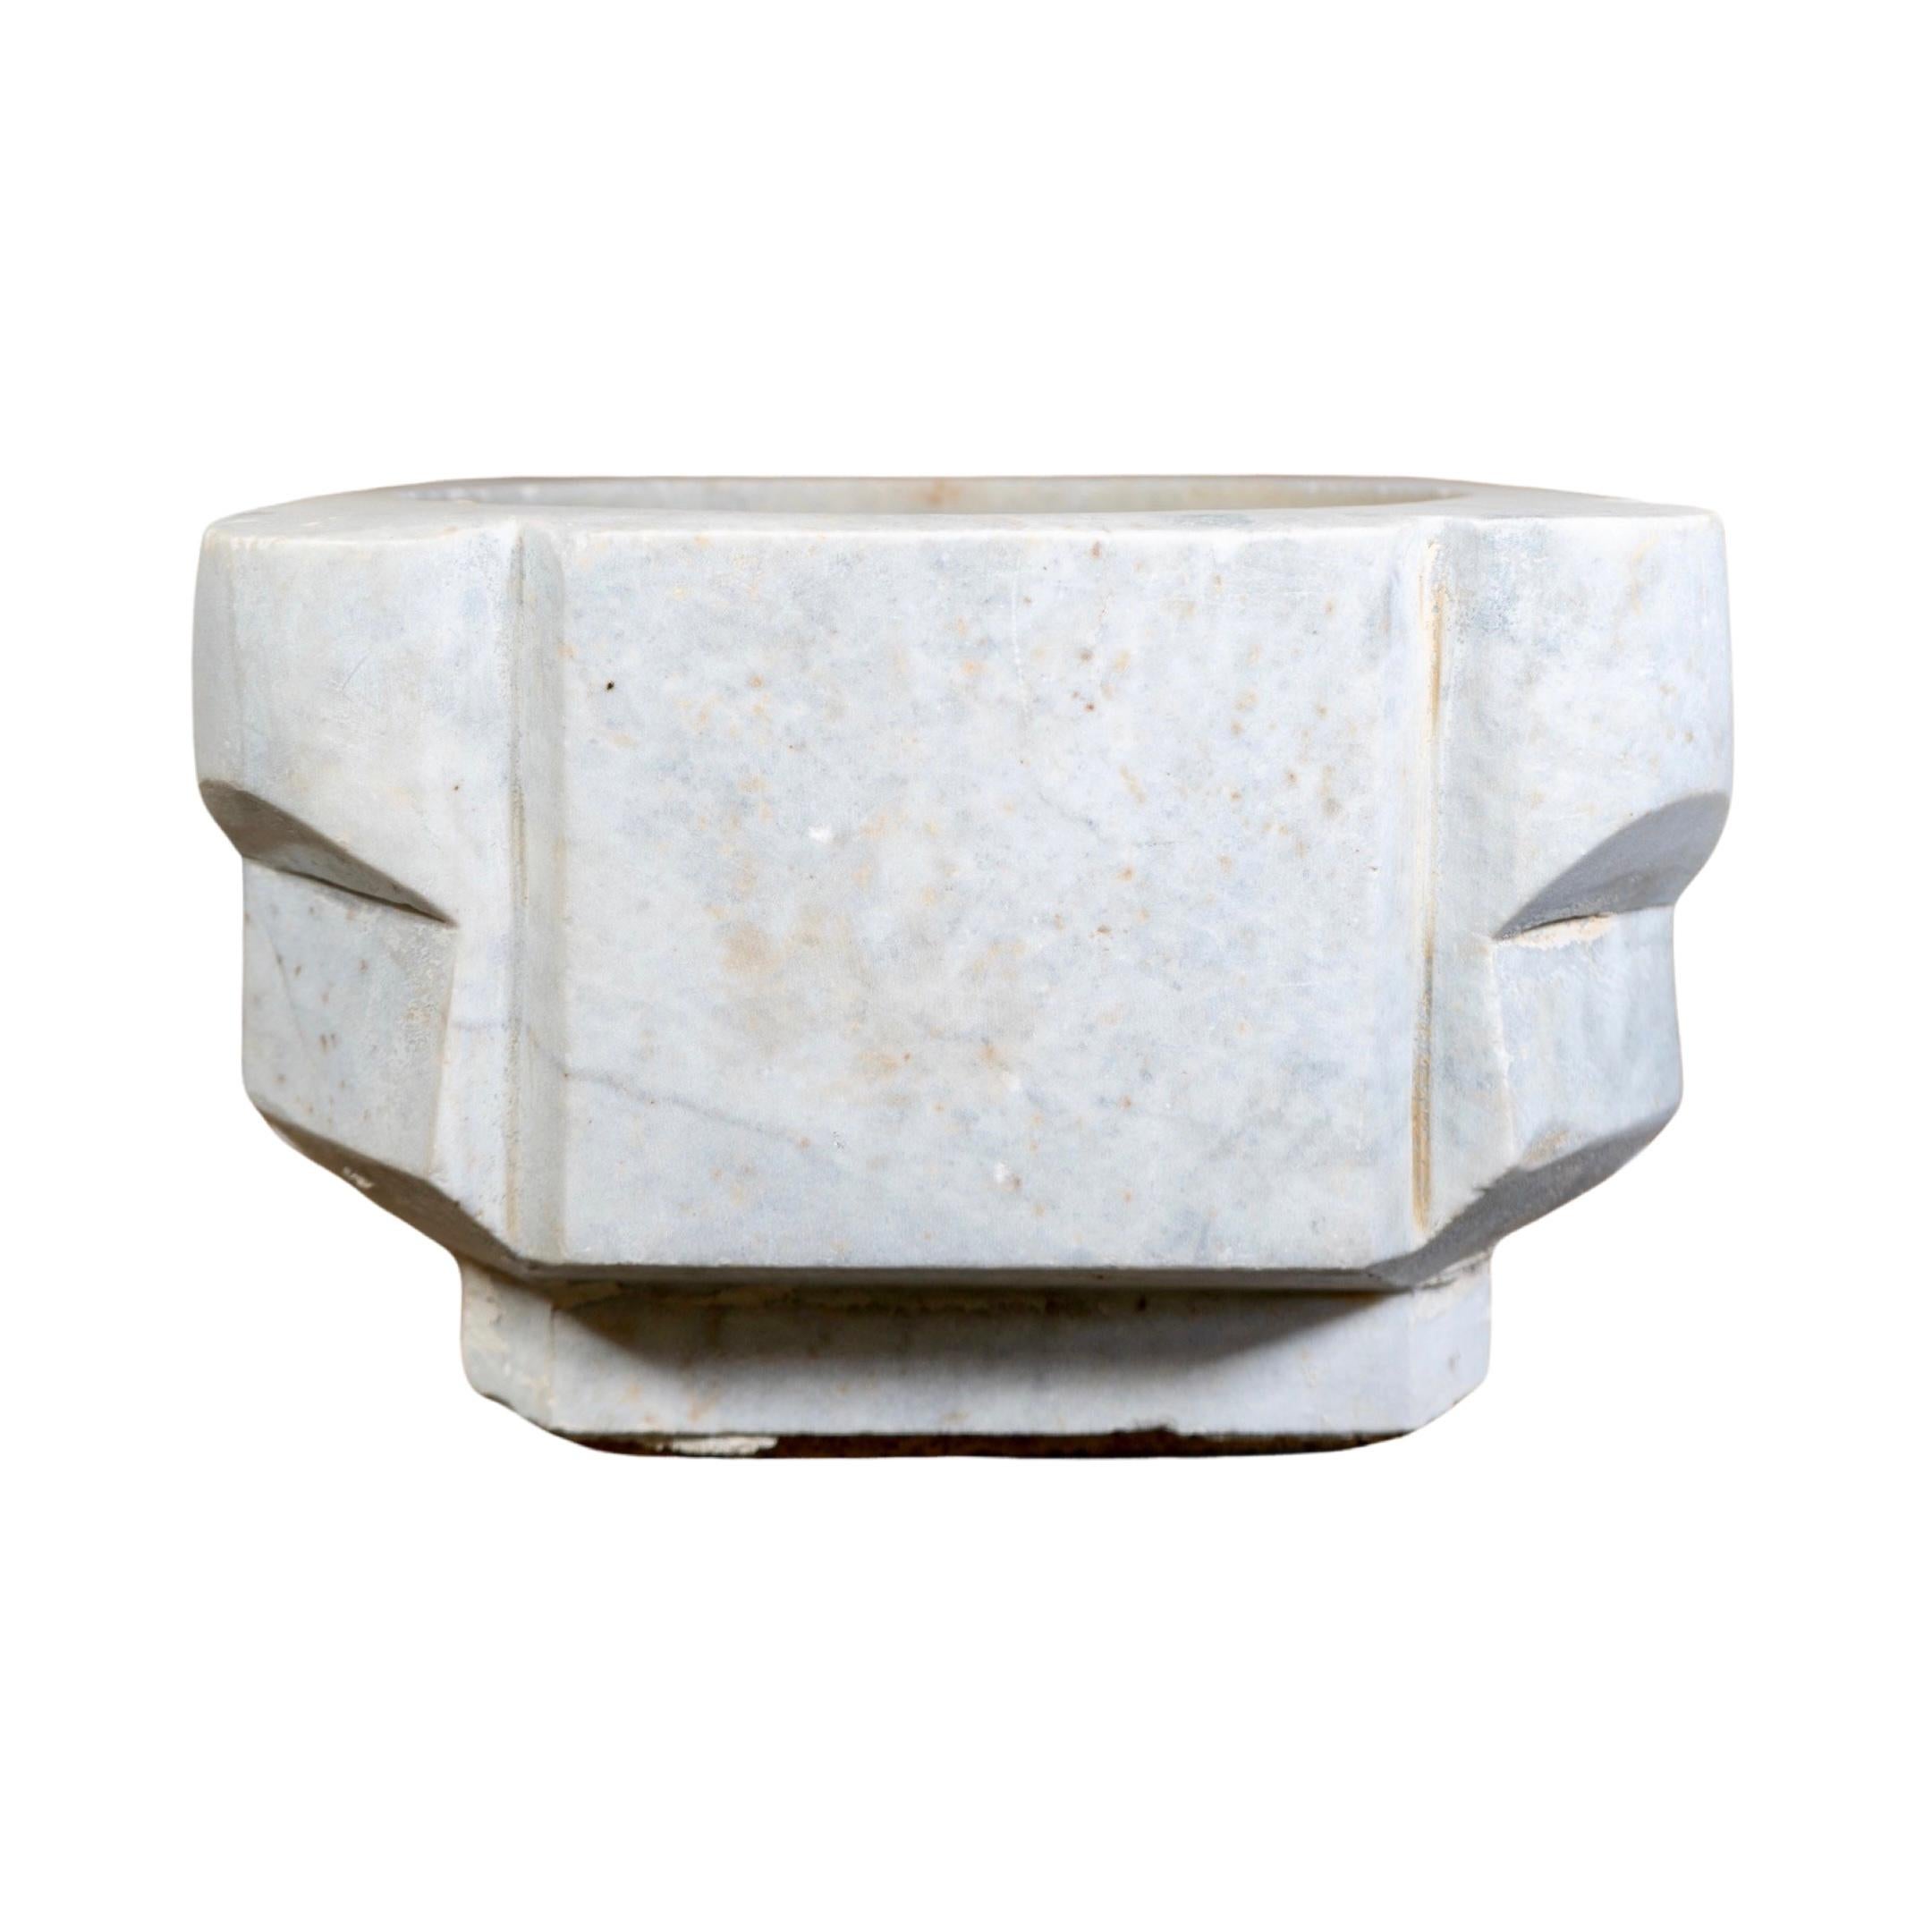 Un évier classique en marbre blanc français du XVIIIe siècle pour une beauté intemporelle. Sa construction en marbre véritable est durable et durera des années, ce qui en fait un excellent choix pour votre salle de bains.